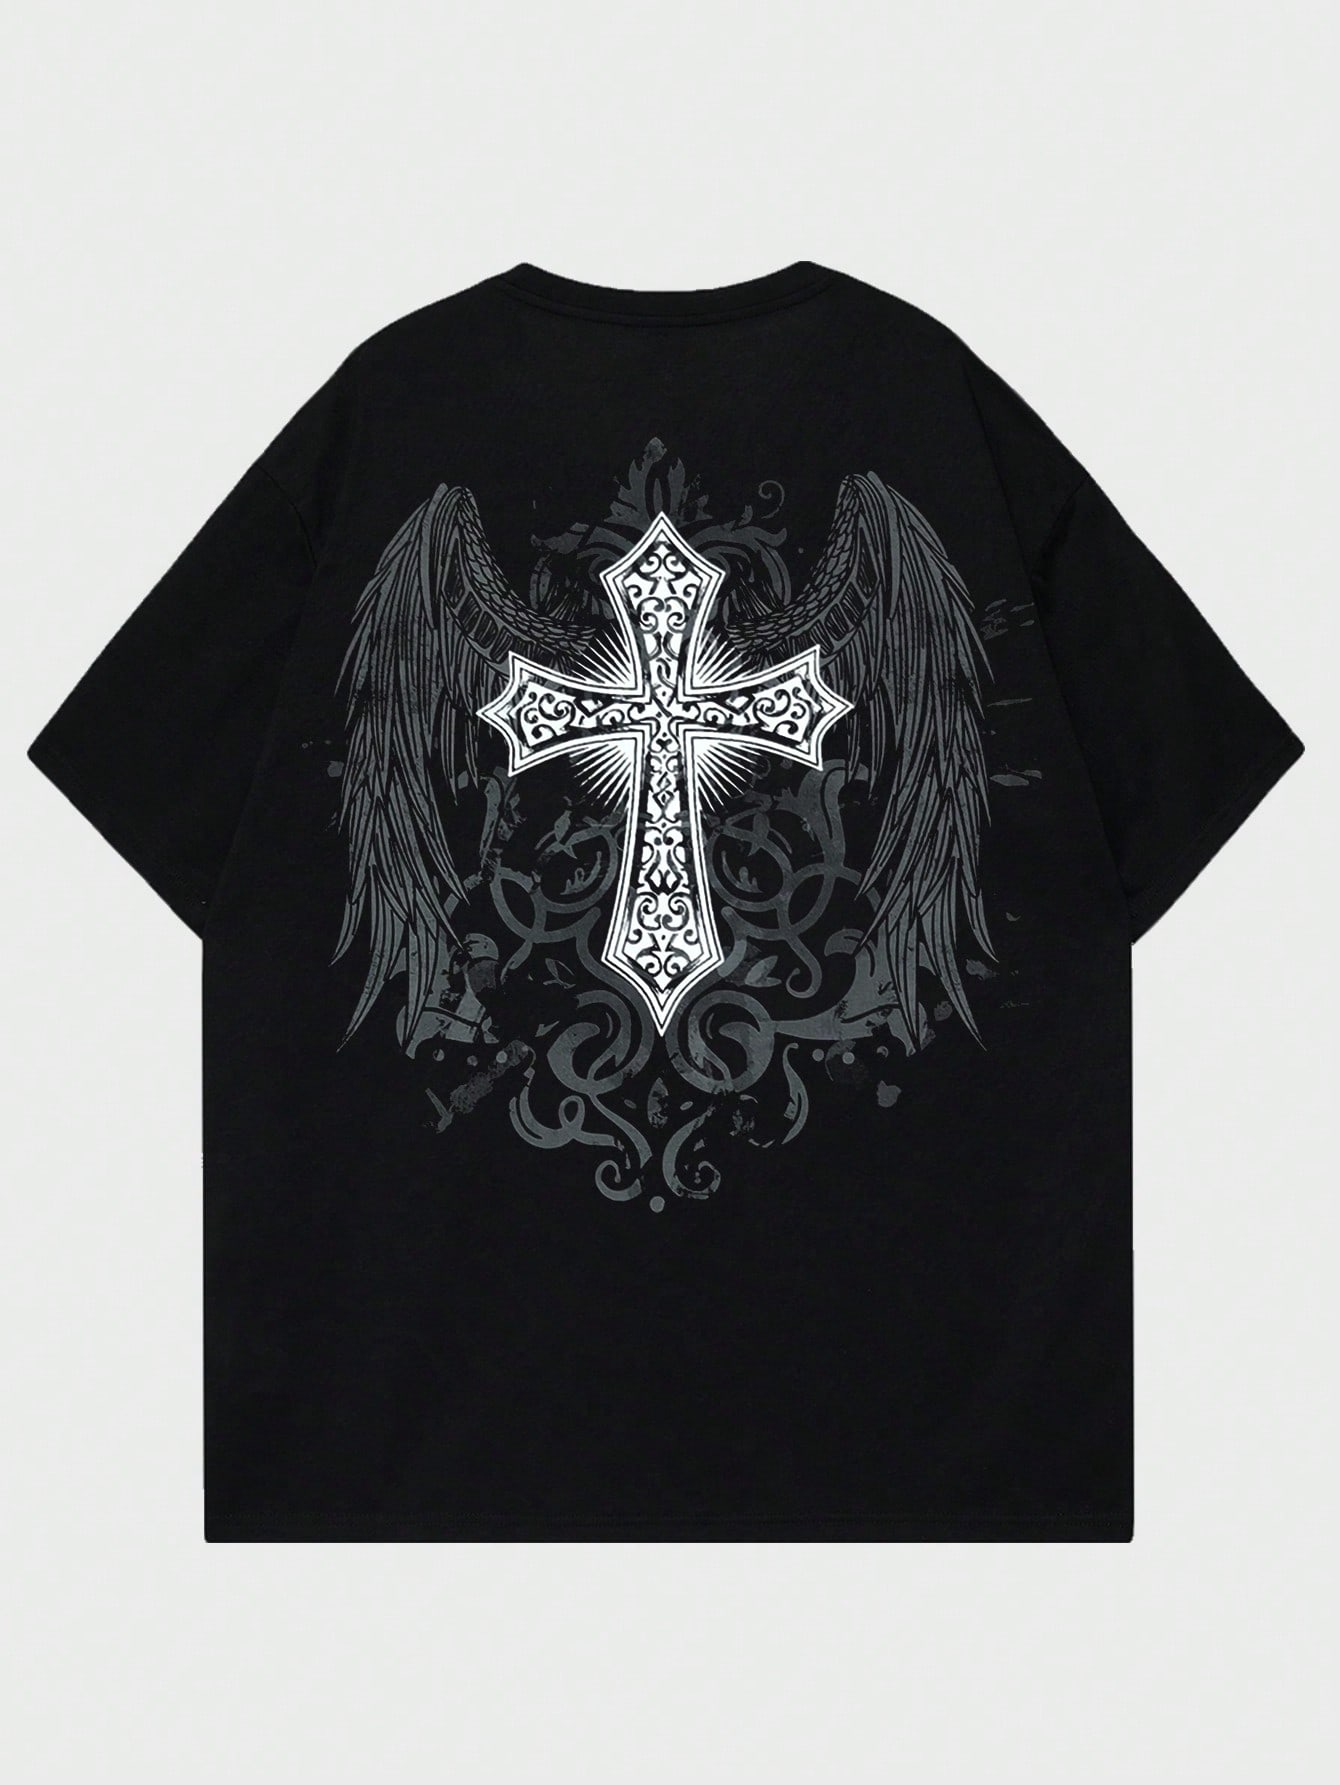 ROMWE Goth Мужская футболка с принтом снежинки и крестом для повседневной жизни, черный набор крестов иерейский лист 168563